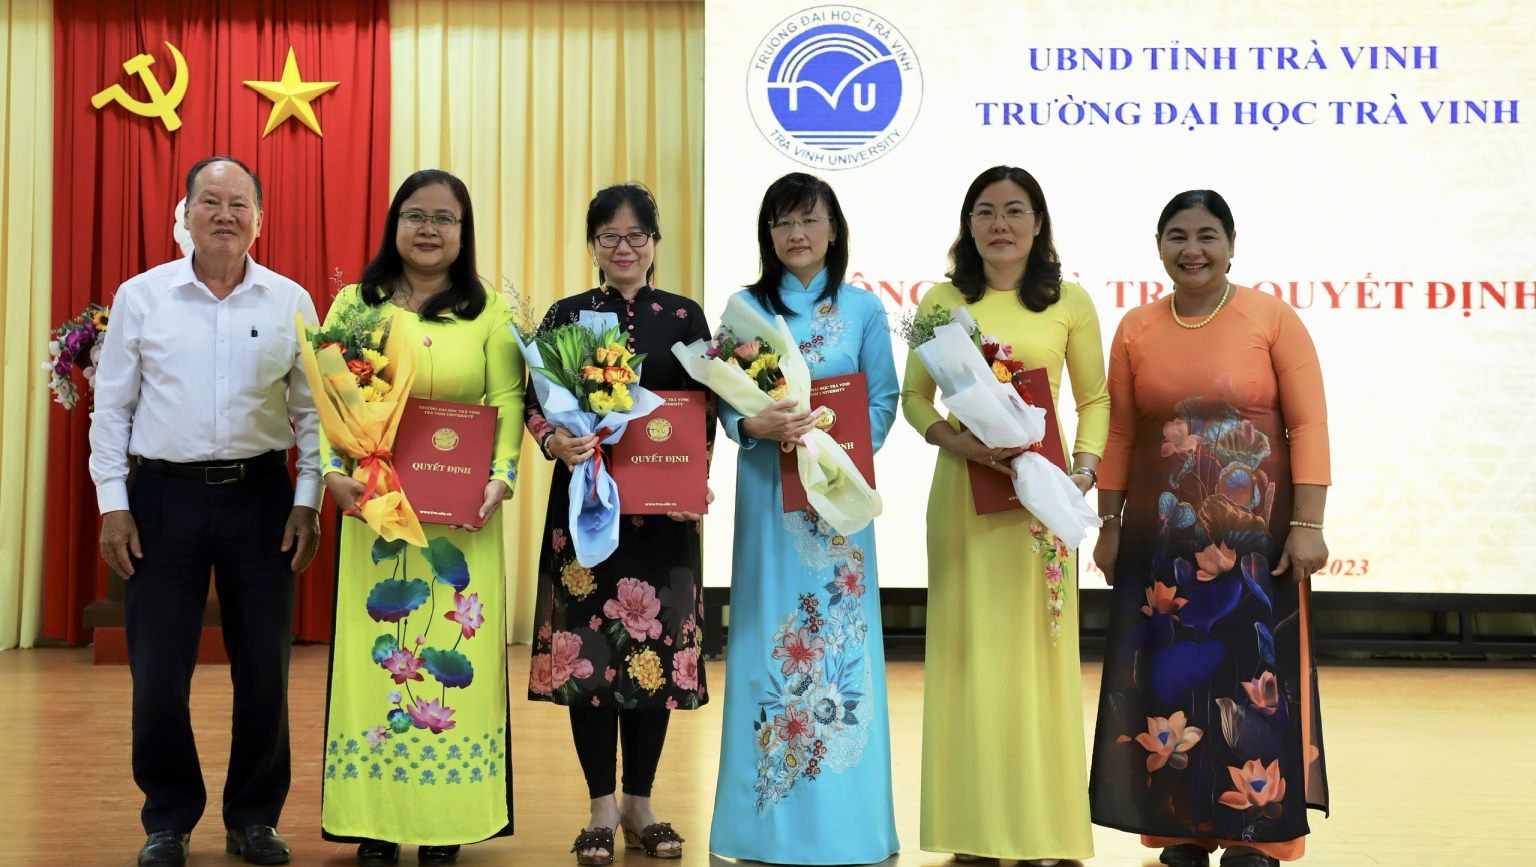 Lãnh đạo Trường đại học Trà Vinh tặng hoa chúc mừng Ban Giám hiệu Trường Ngôn ngữ - Văn hóa - Nghệ thuật Khmer Nam bộ và Nhân văn.  